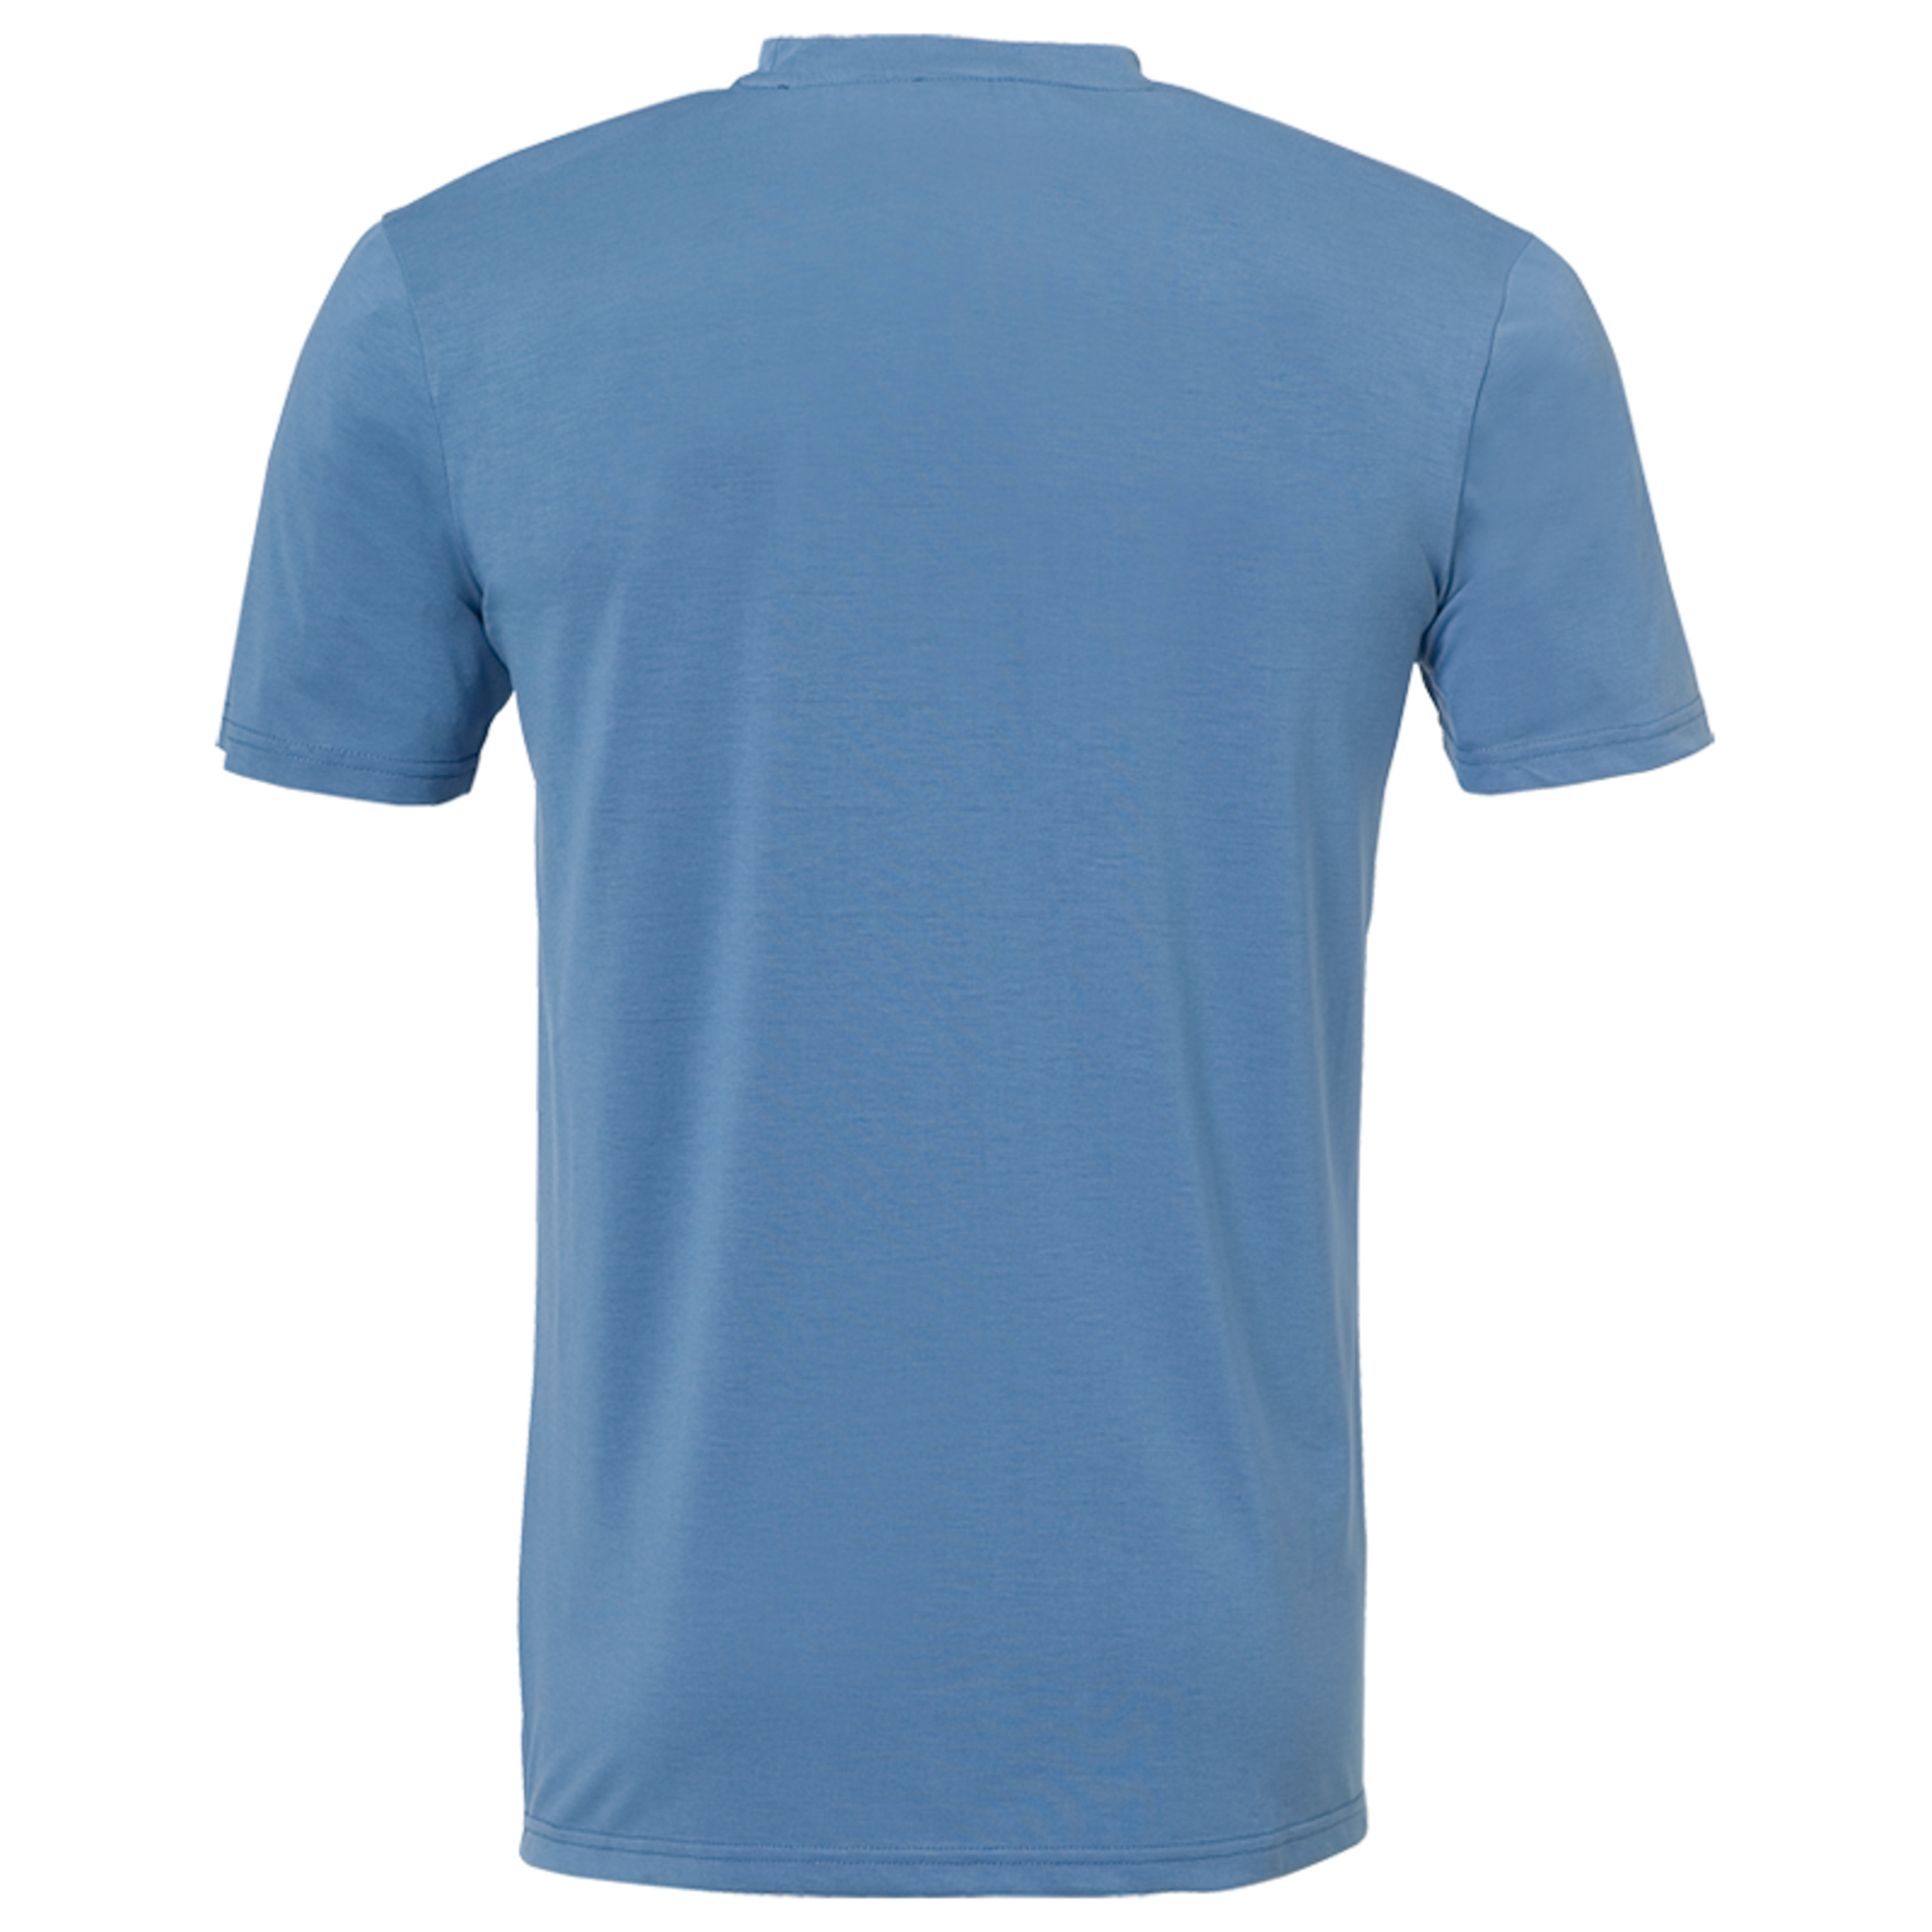 Laganda T-shirt Azul Acero Kempa